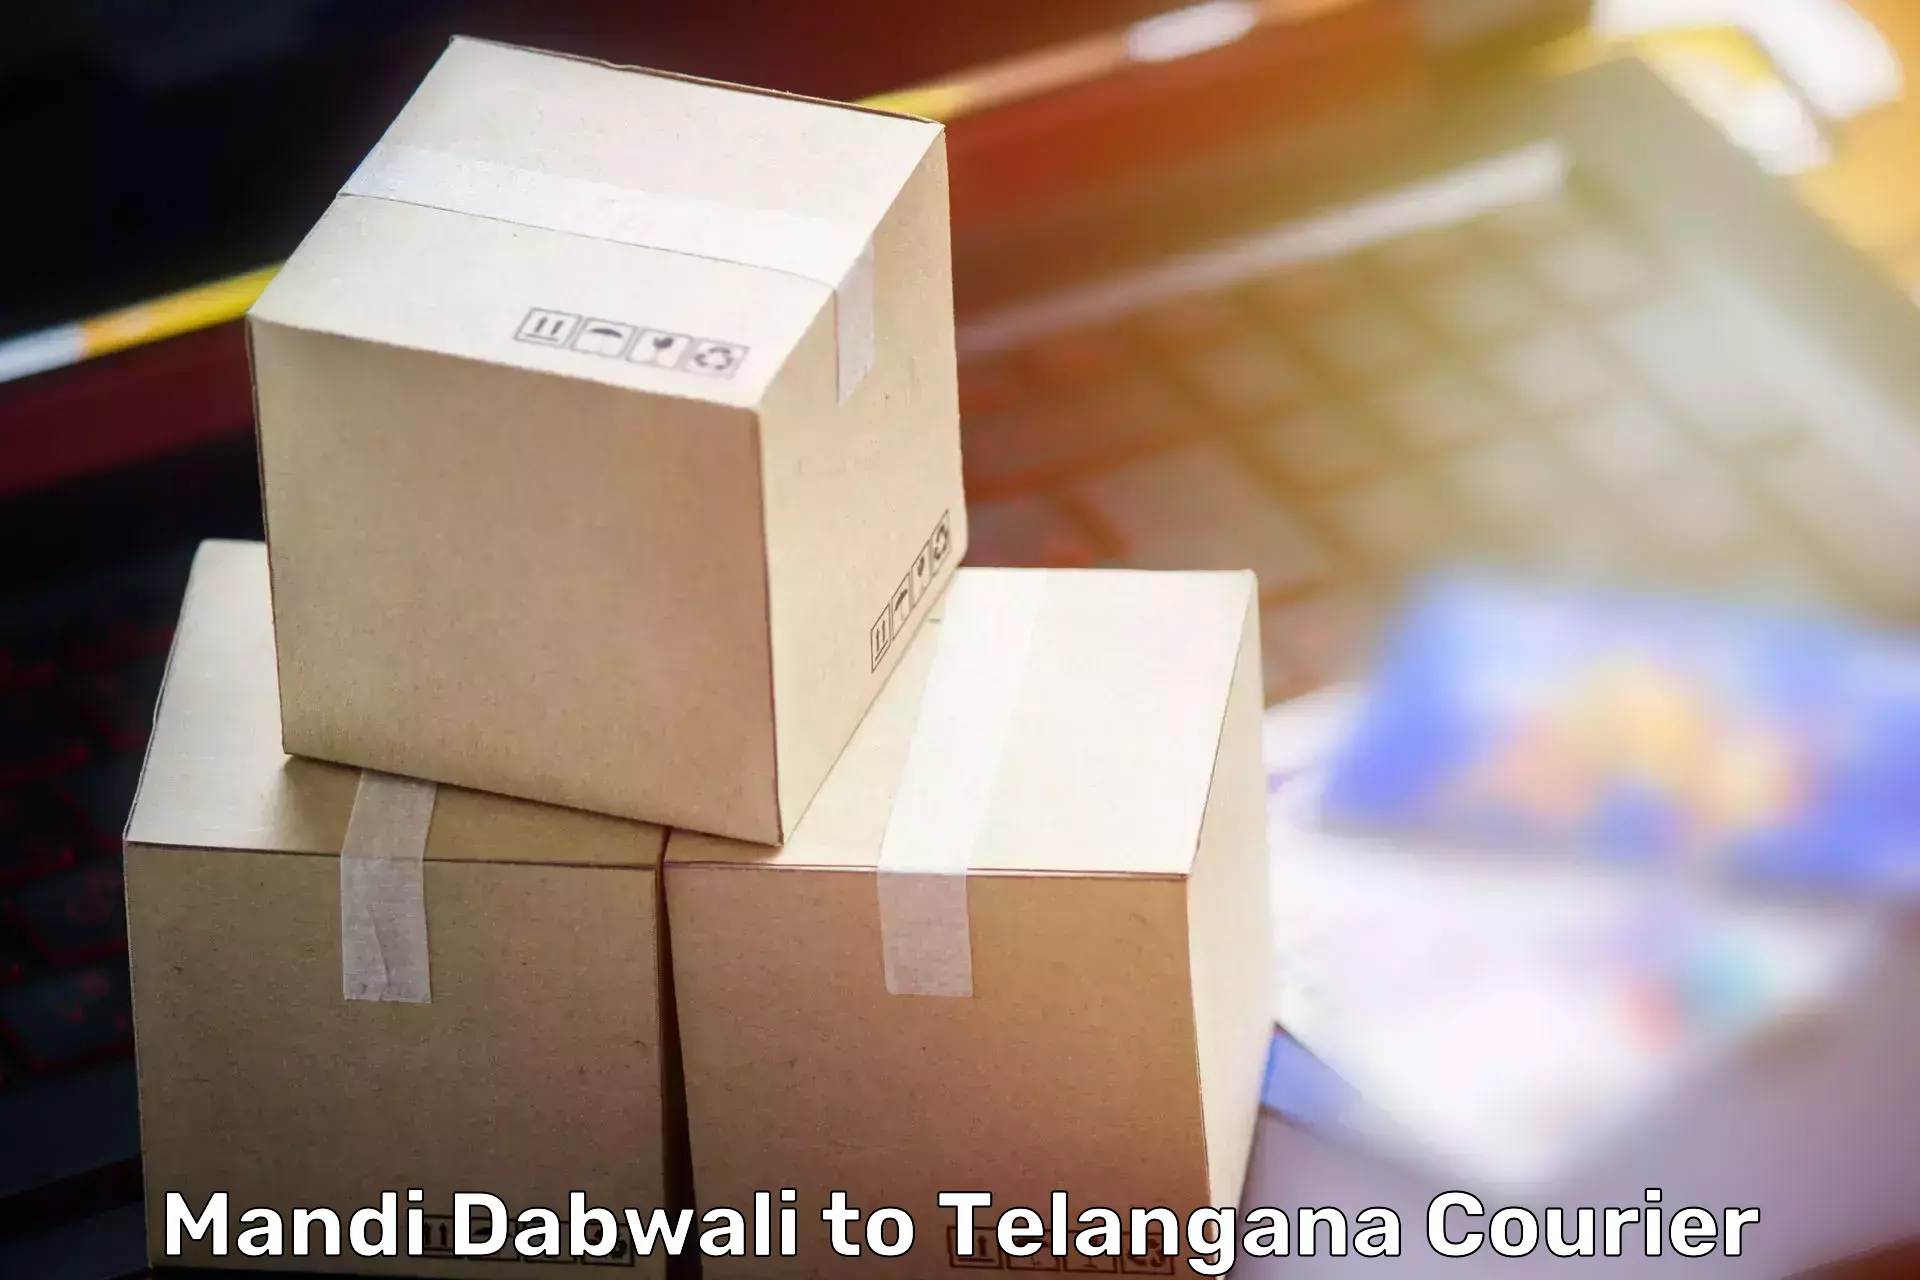 Household moving service Mandi Dabwali to Yellandu